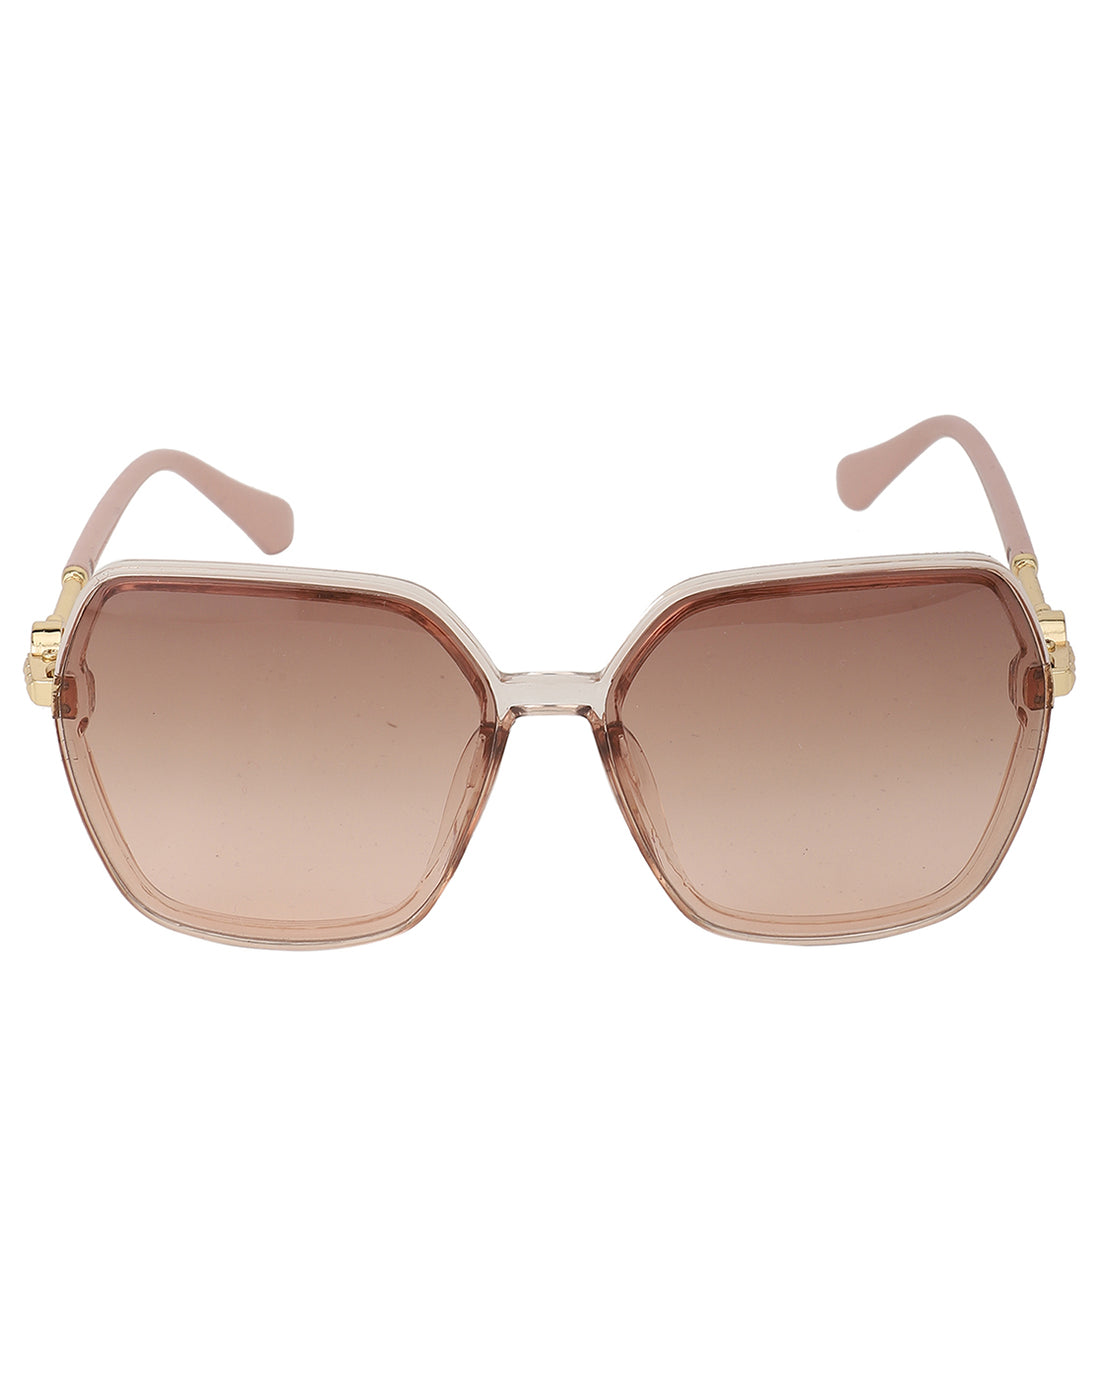 Carlton London Polarised &amp; Uv Protected Lens Full Rim Oversized Sunglasses For Women